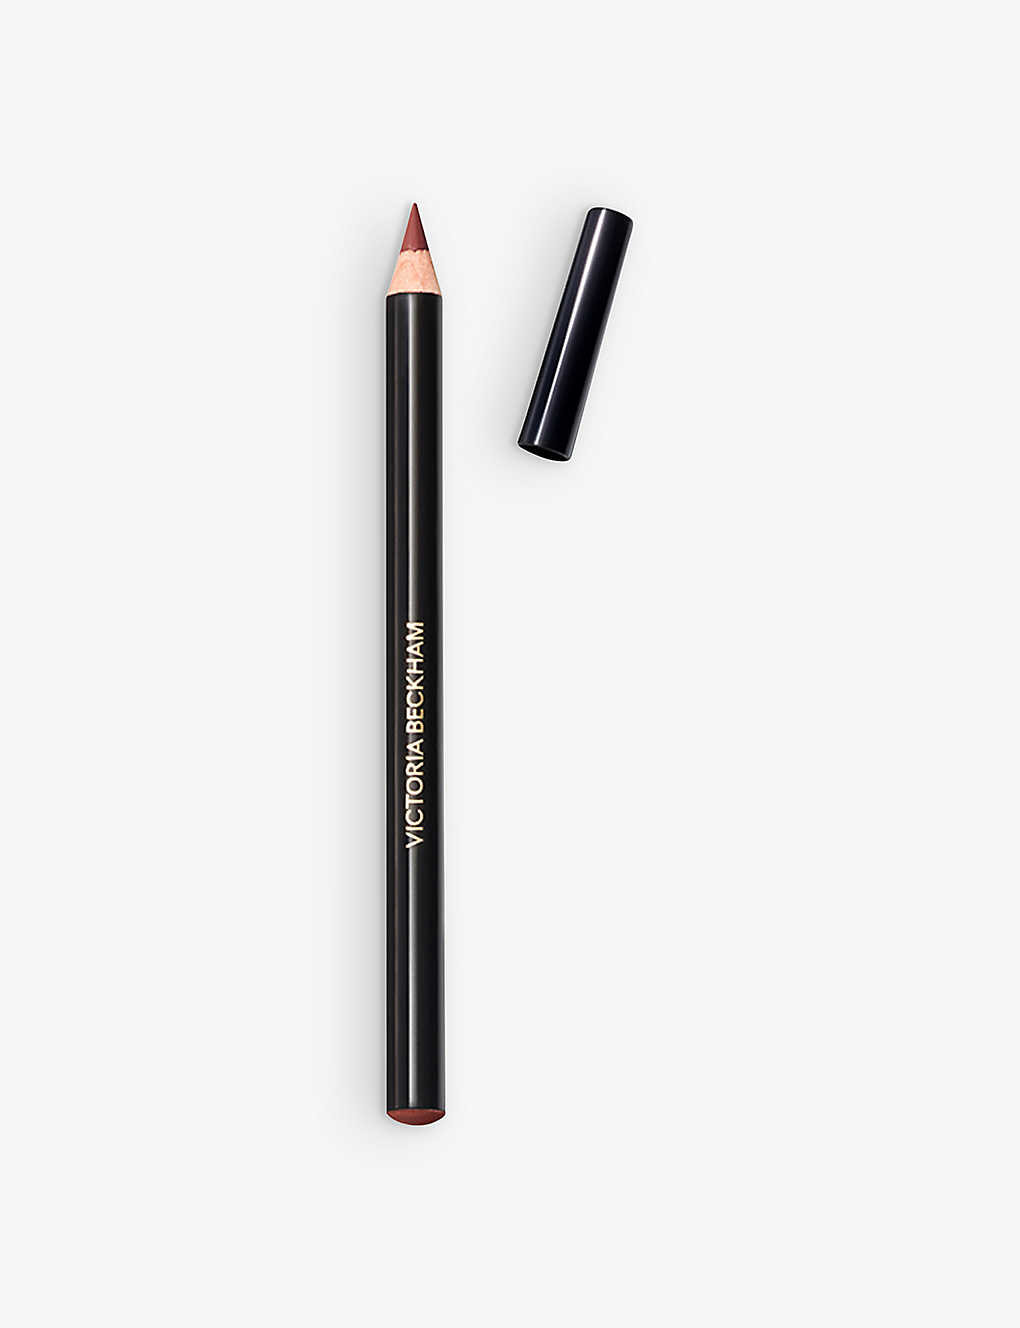 Victoria Beckham Beauty 4 Lip Definer Lip Pencil 1.1g